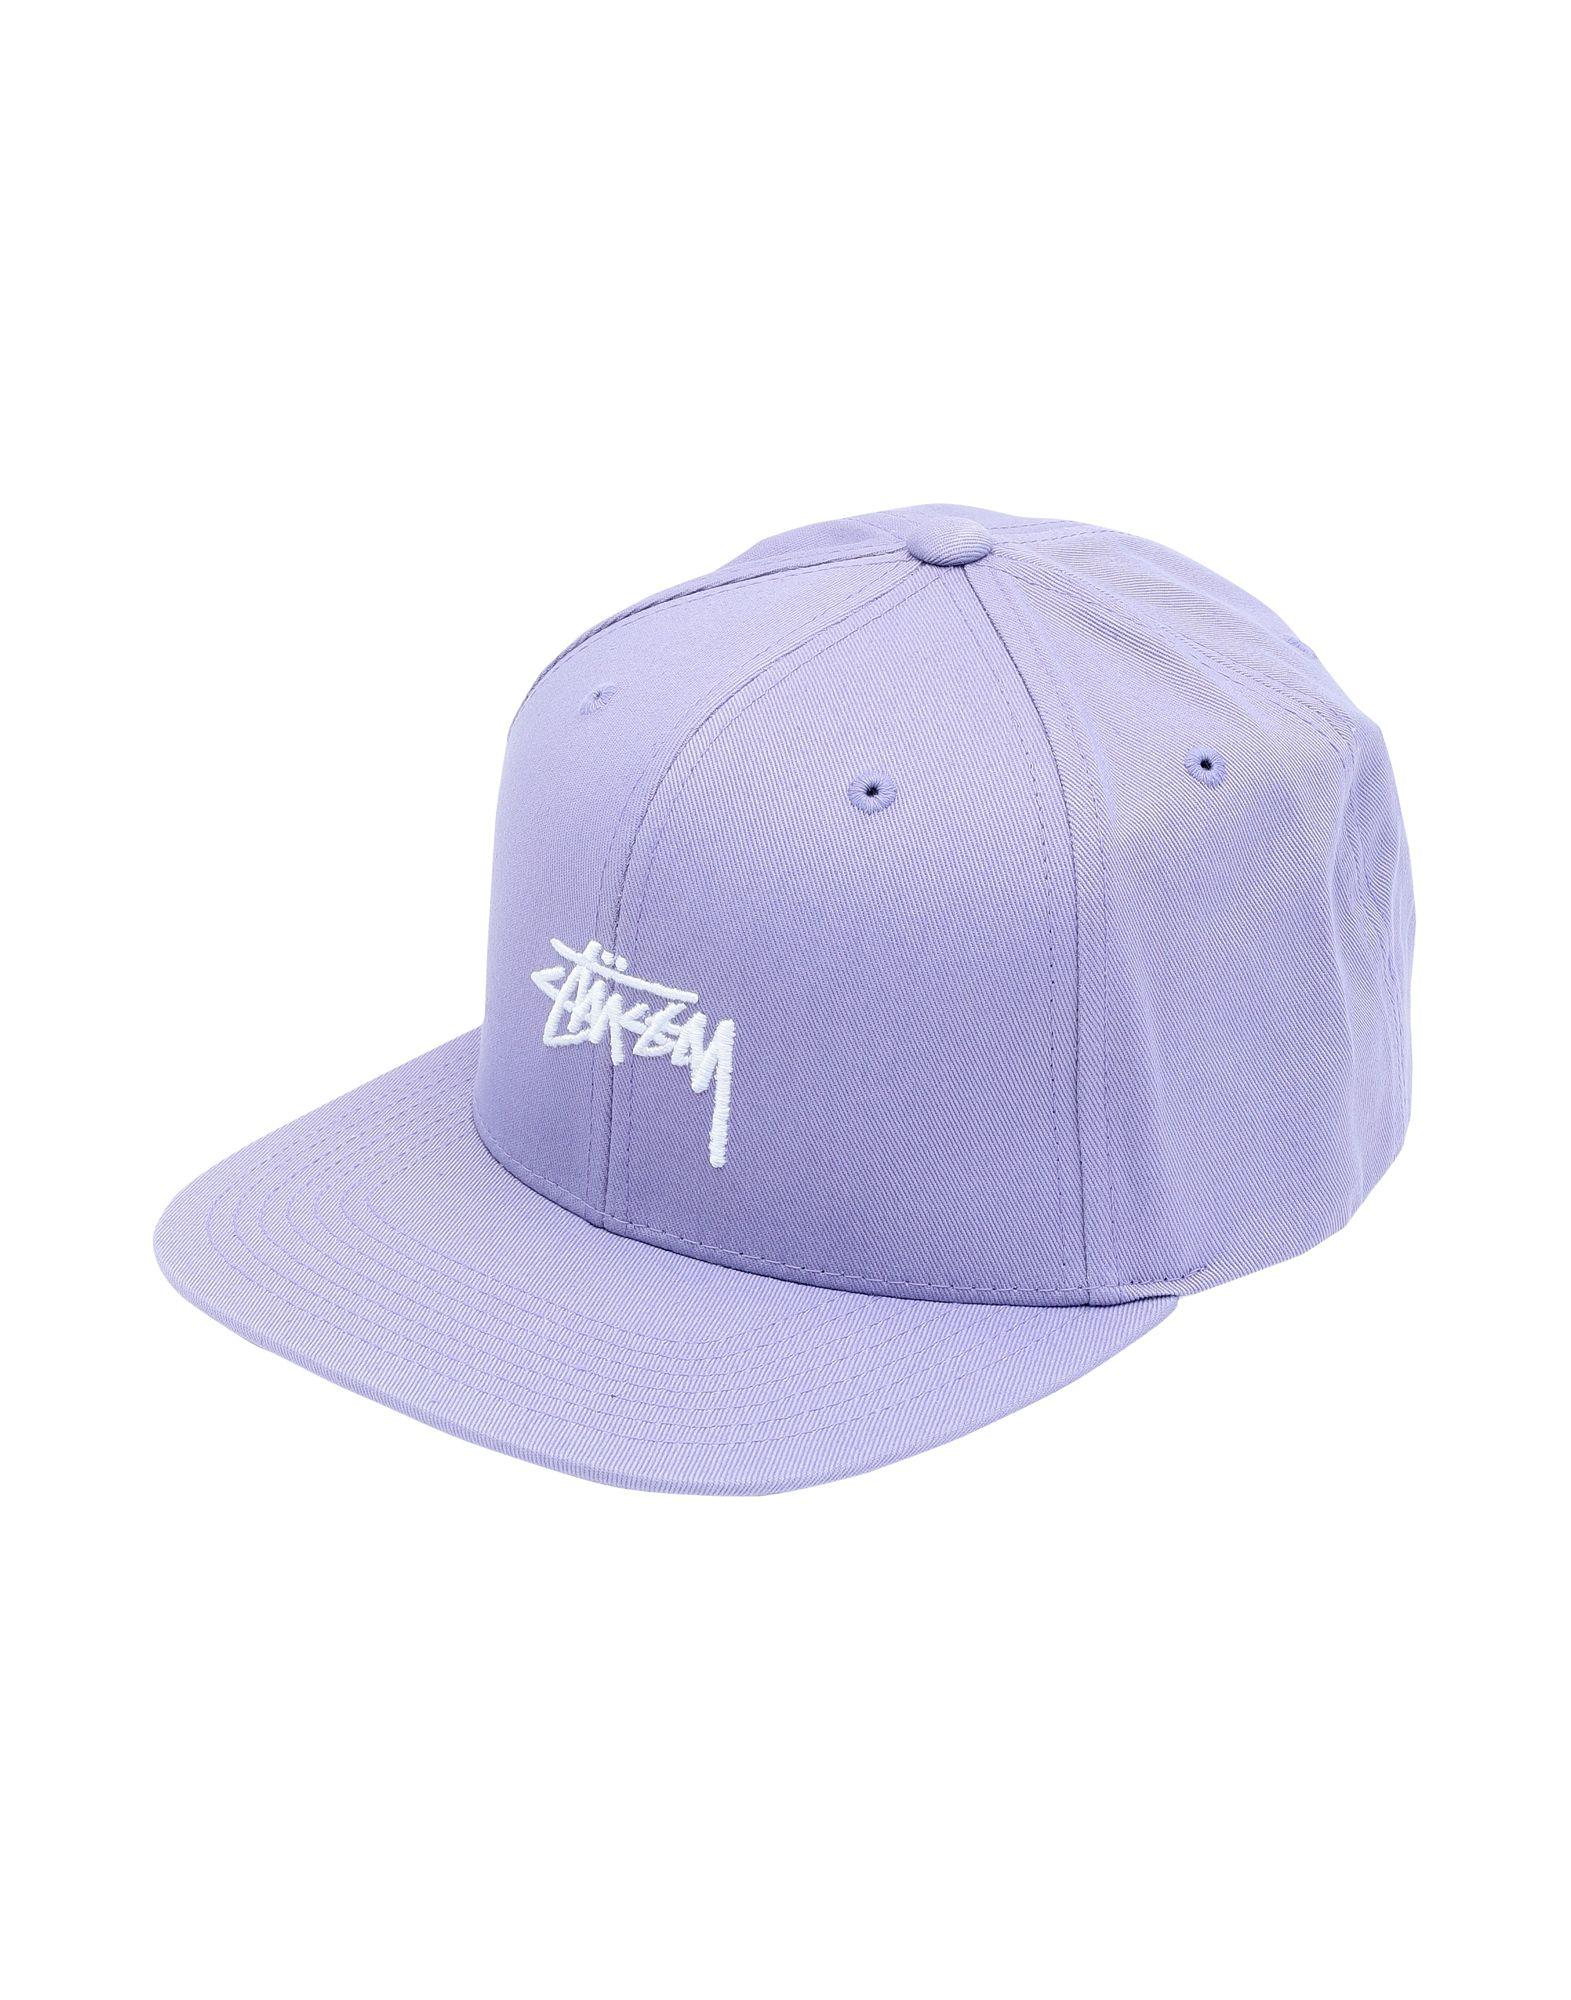 Purple & Tan NEW Men's Stussy Worldwide Beanie Skull Hats